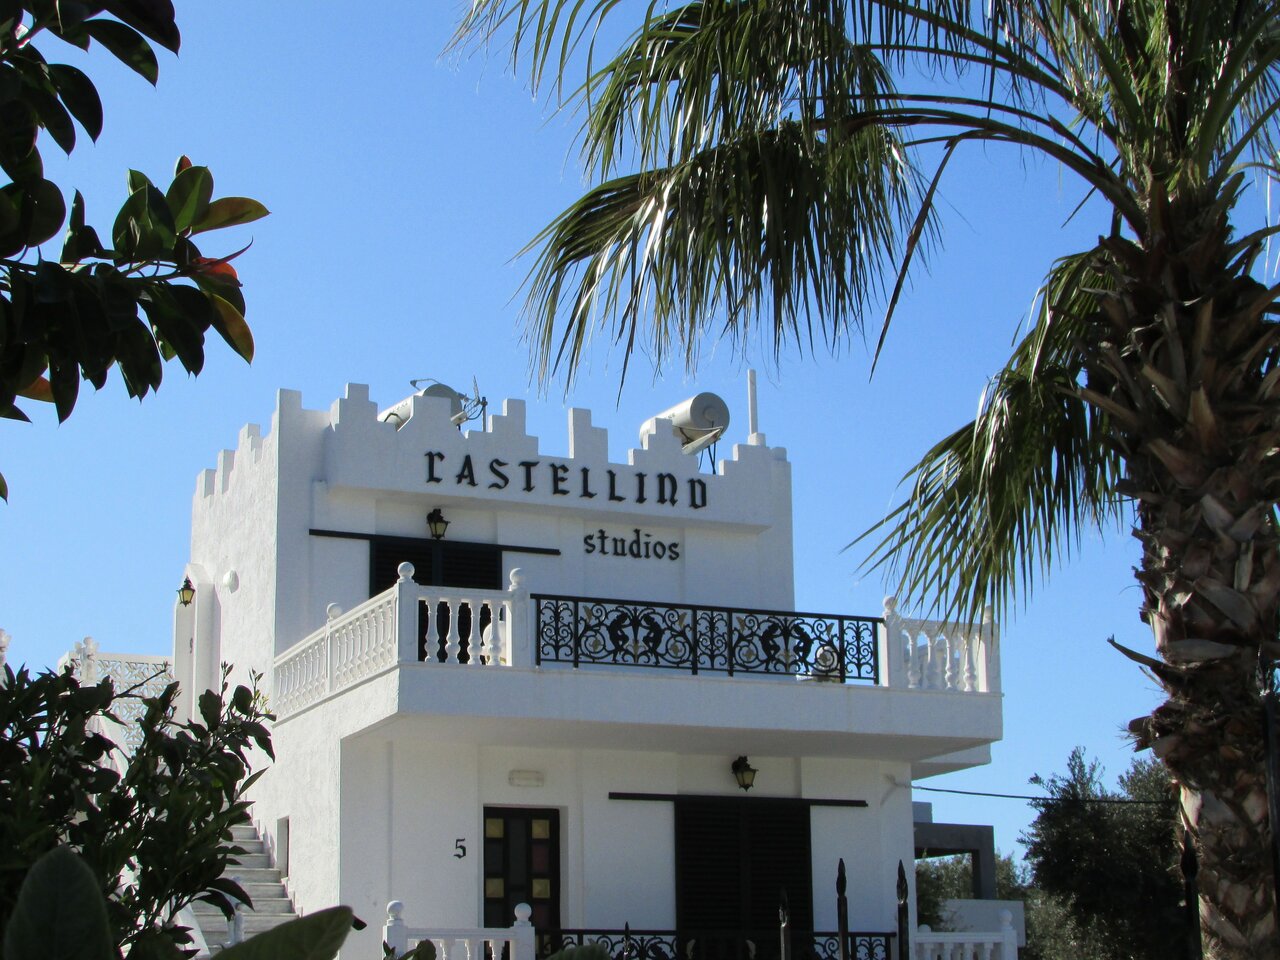 Castellino Studios